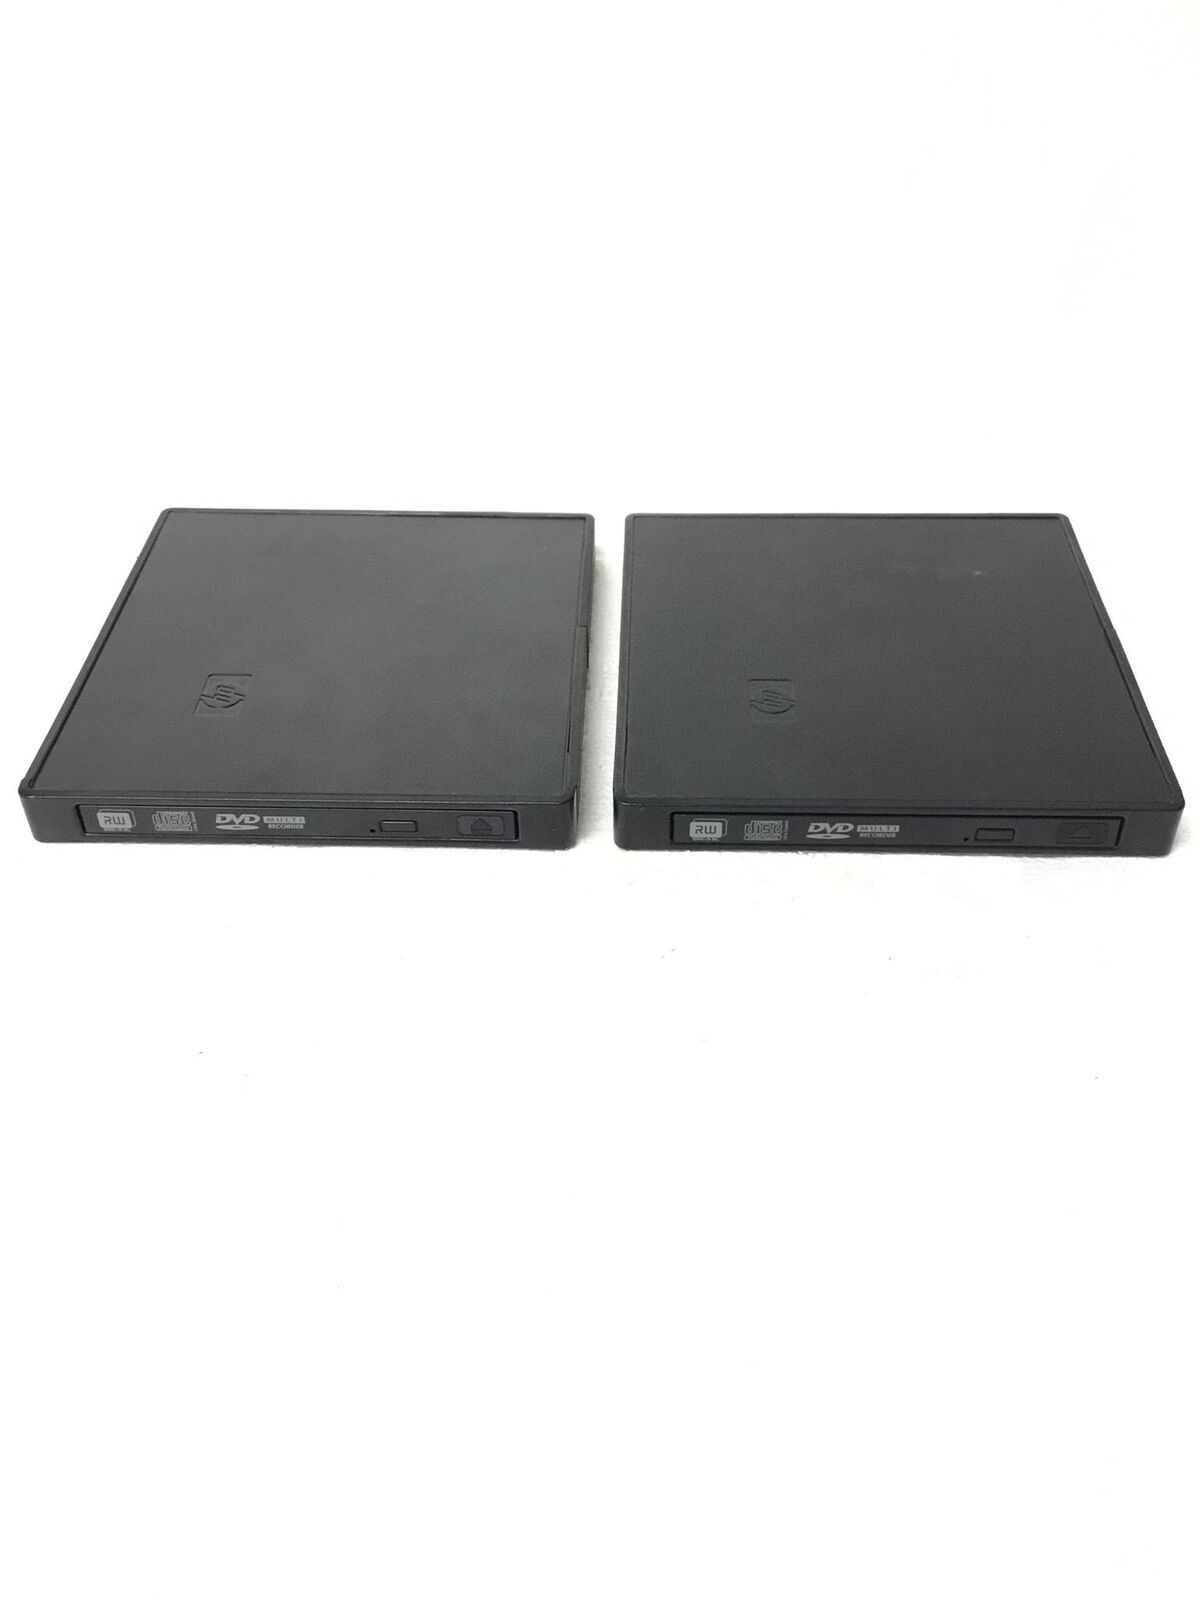 2x HP External USB DVD-RW CDRW Writer Player PA509A 361297-001,No AC Adapter,QTY